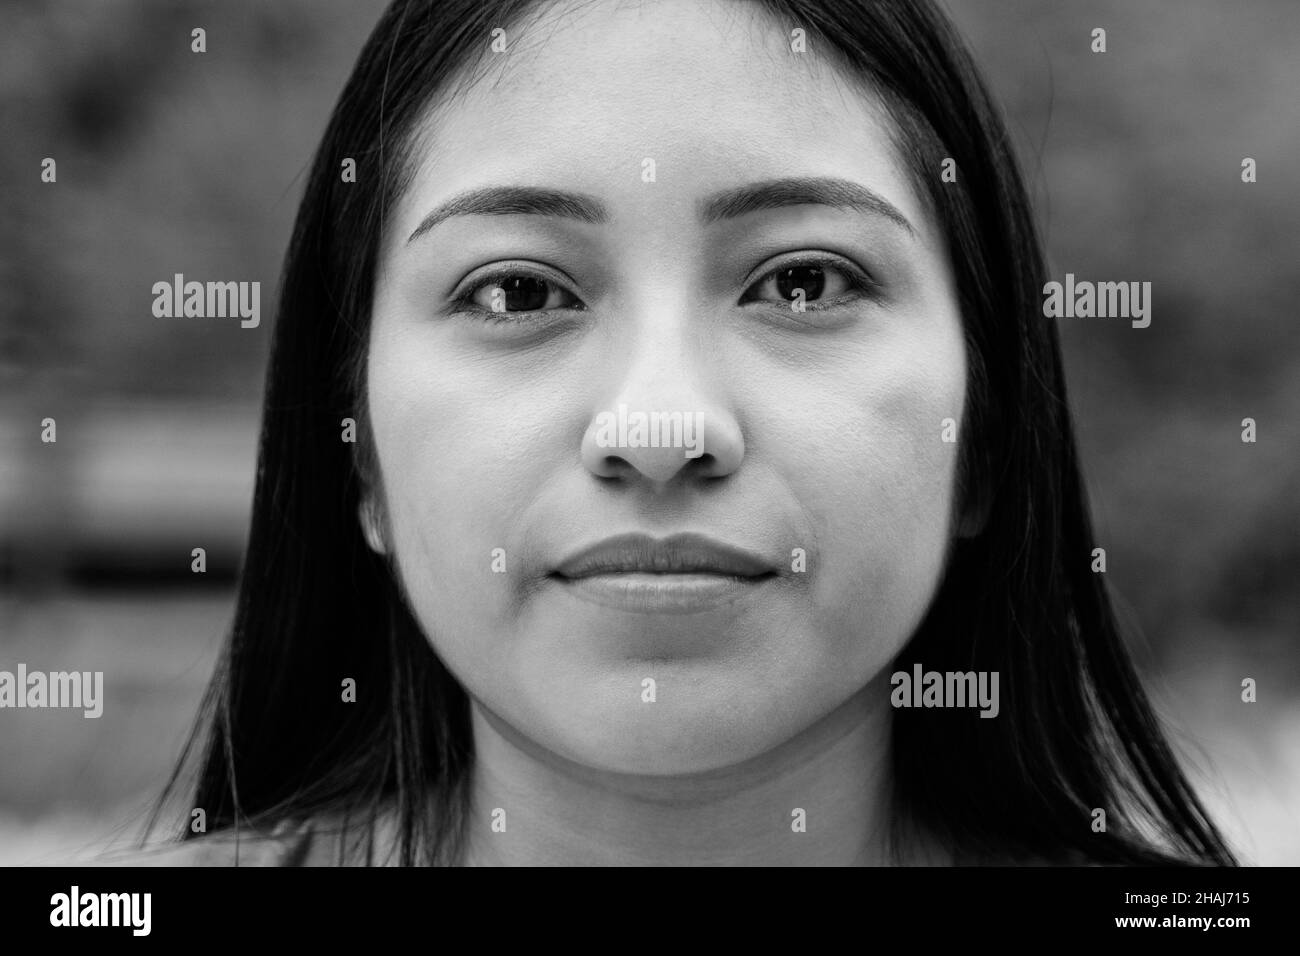 Asiatische junge Frau, die ernsthaft vor der Kamera schaut - Fokus auf Gesicht Stockfoto